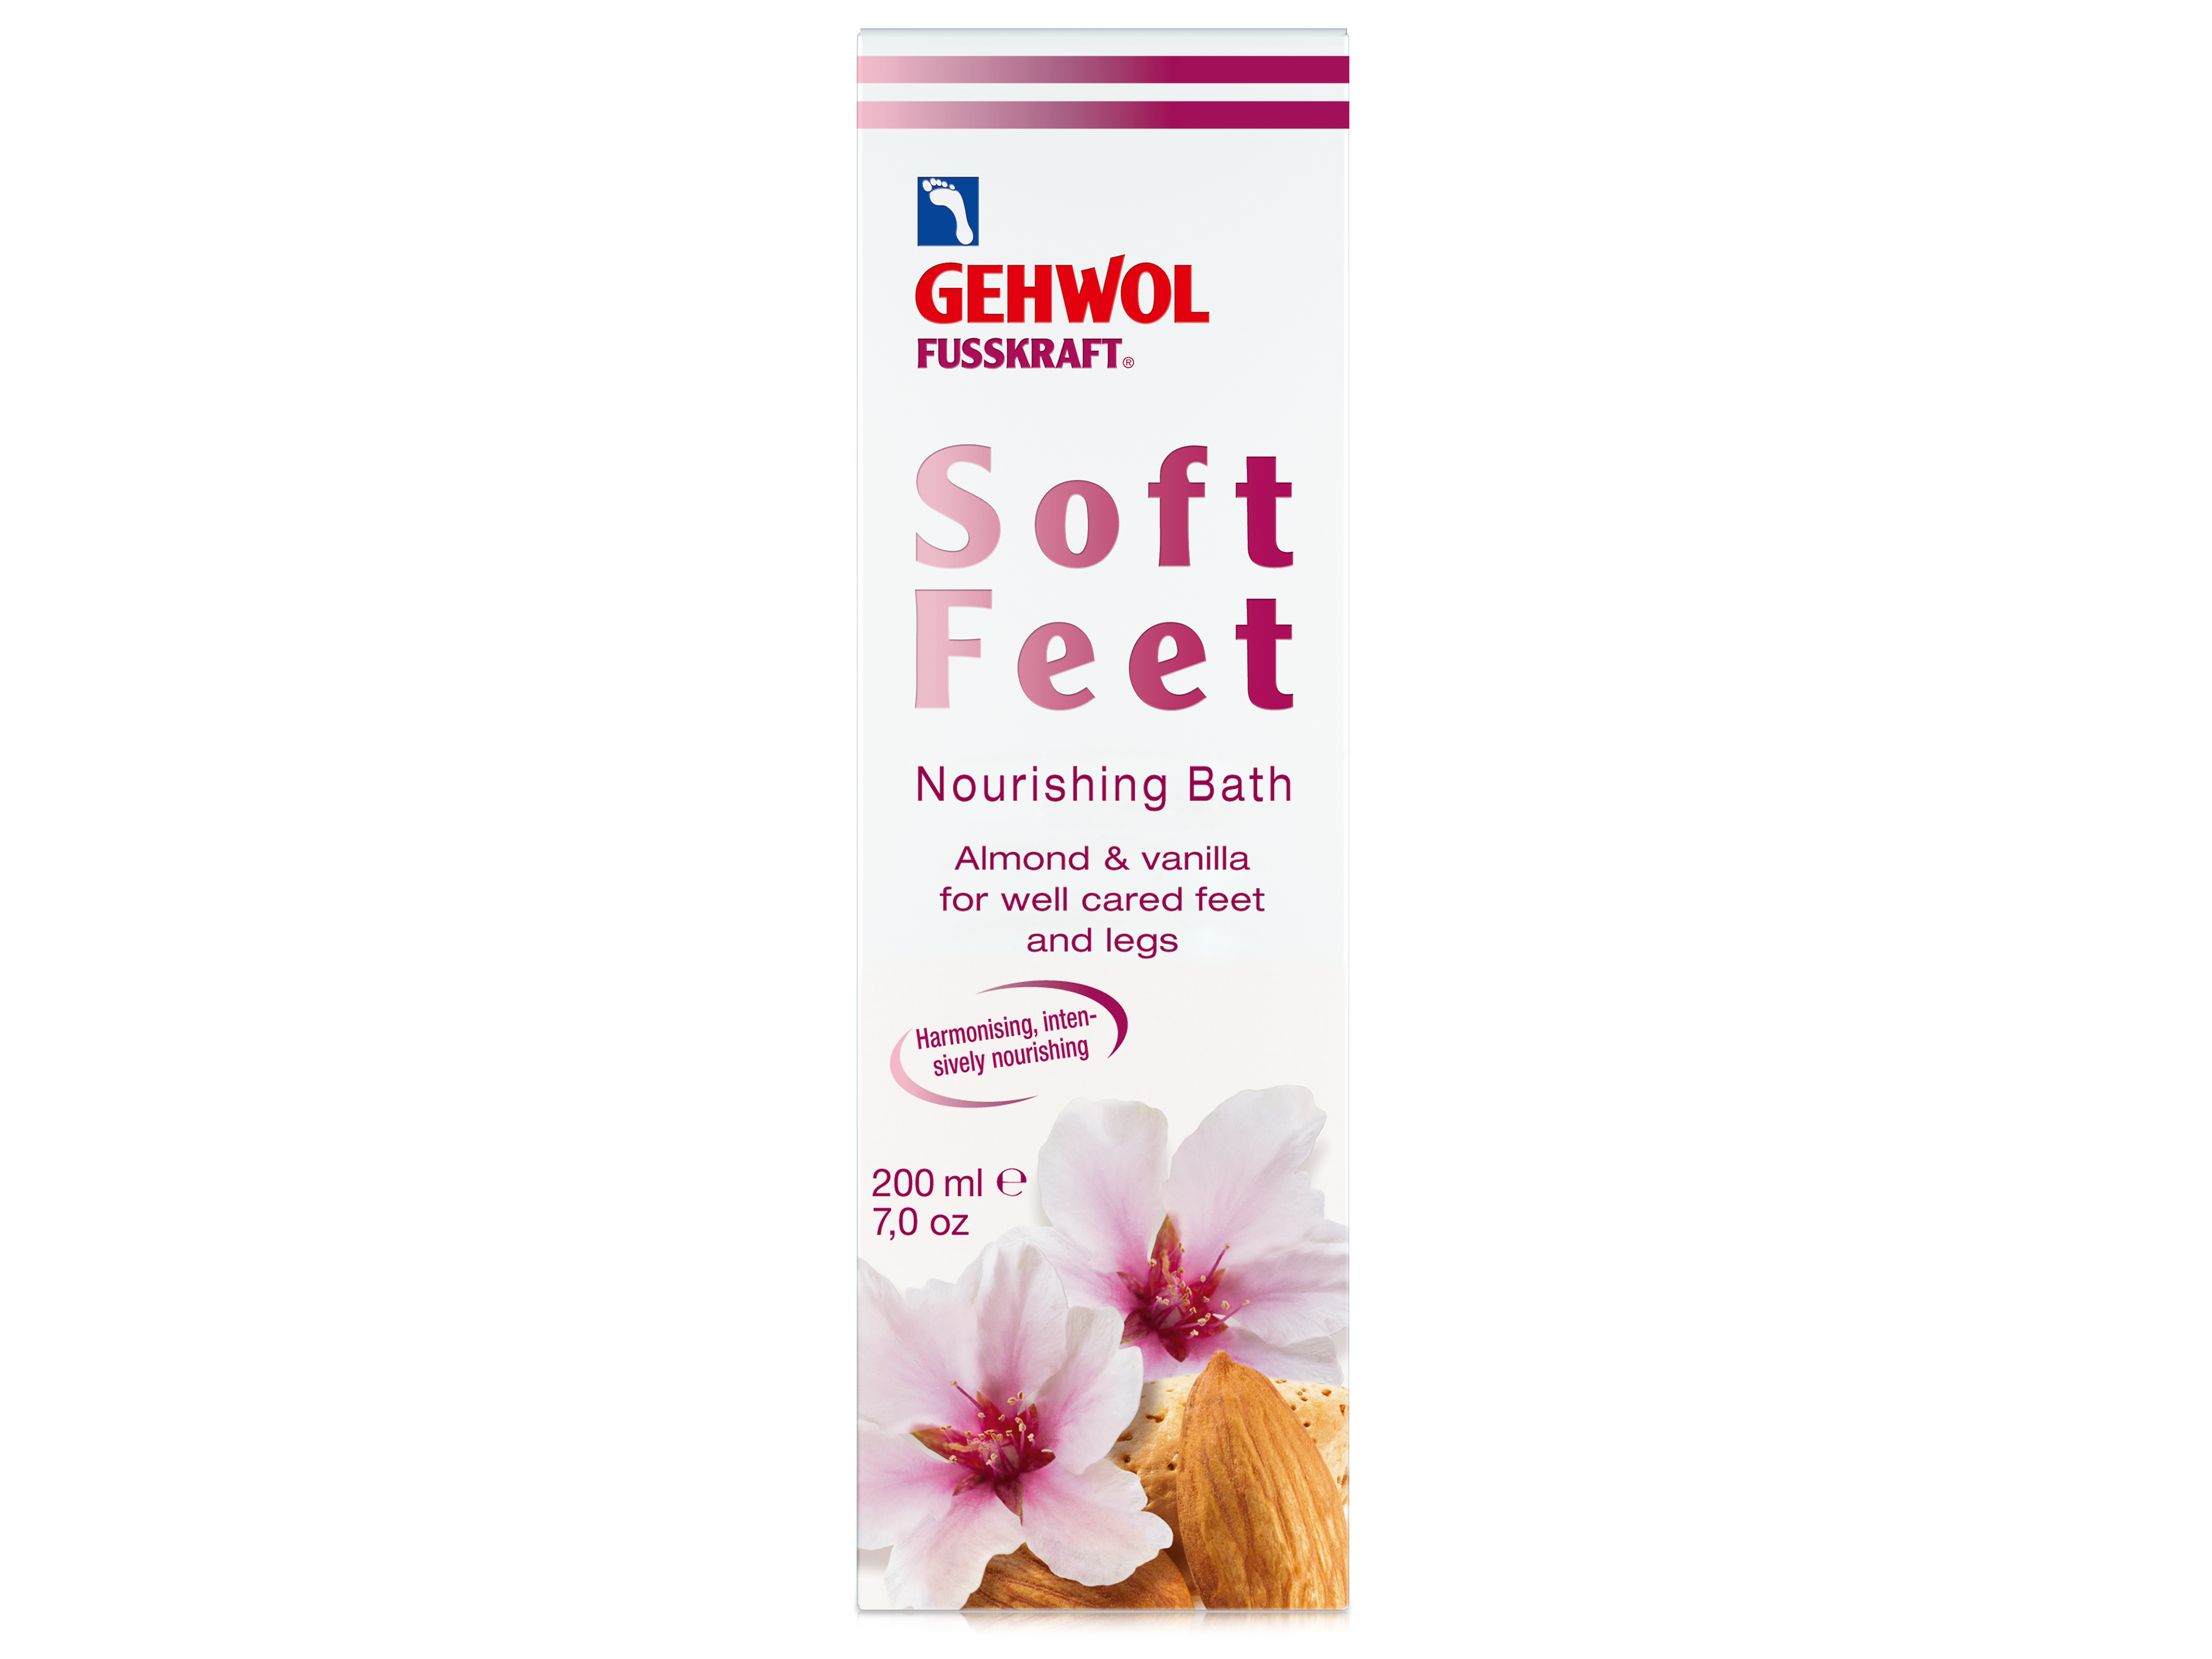 Gehwol Fusskraft Soft Feet Bath, 200 ml